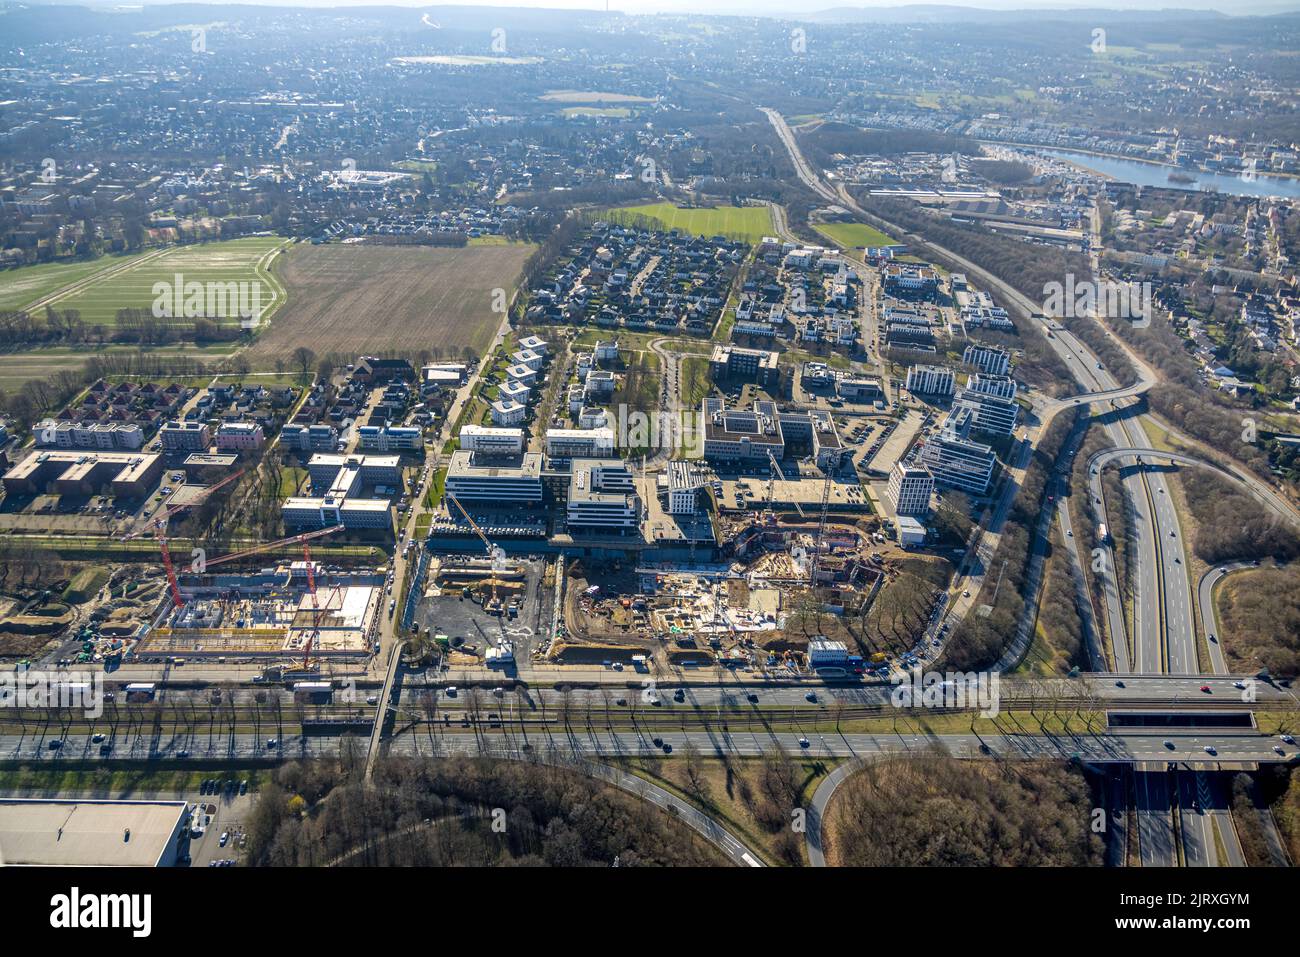 Vista aerea, City Crone East, Federal Highway B1, A40 e B236, Dortmund, Zona della Ruhr, Renania settentrionale-Vestfalia, Germania, Europa, DE, fotografia aerea, b Foto Stock